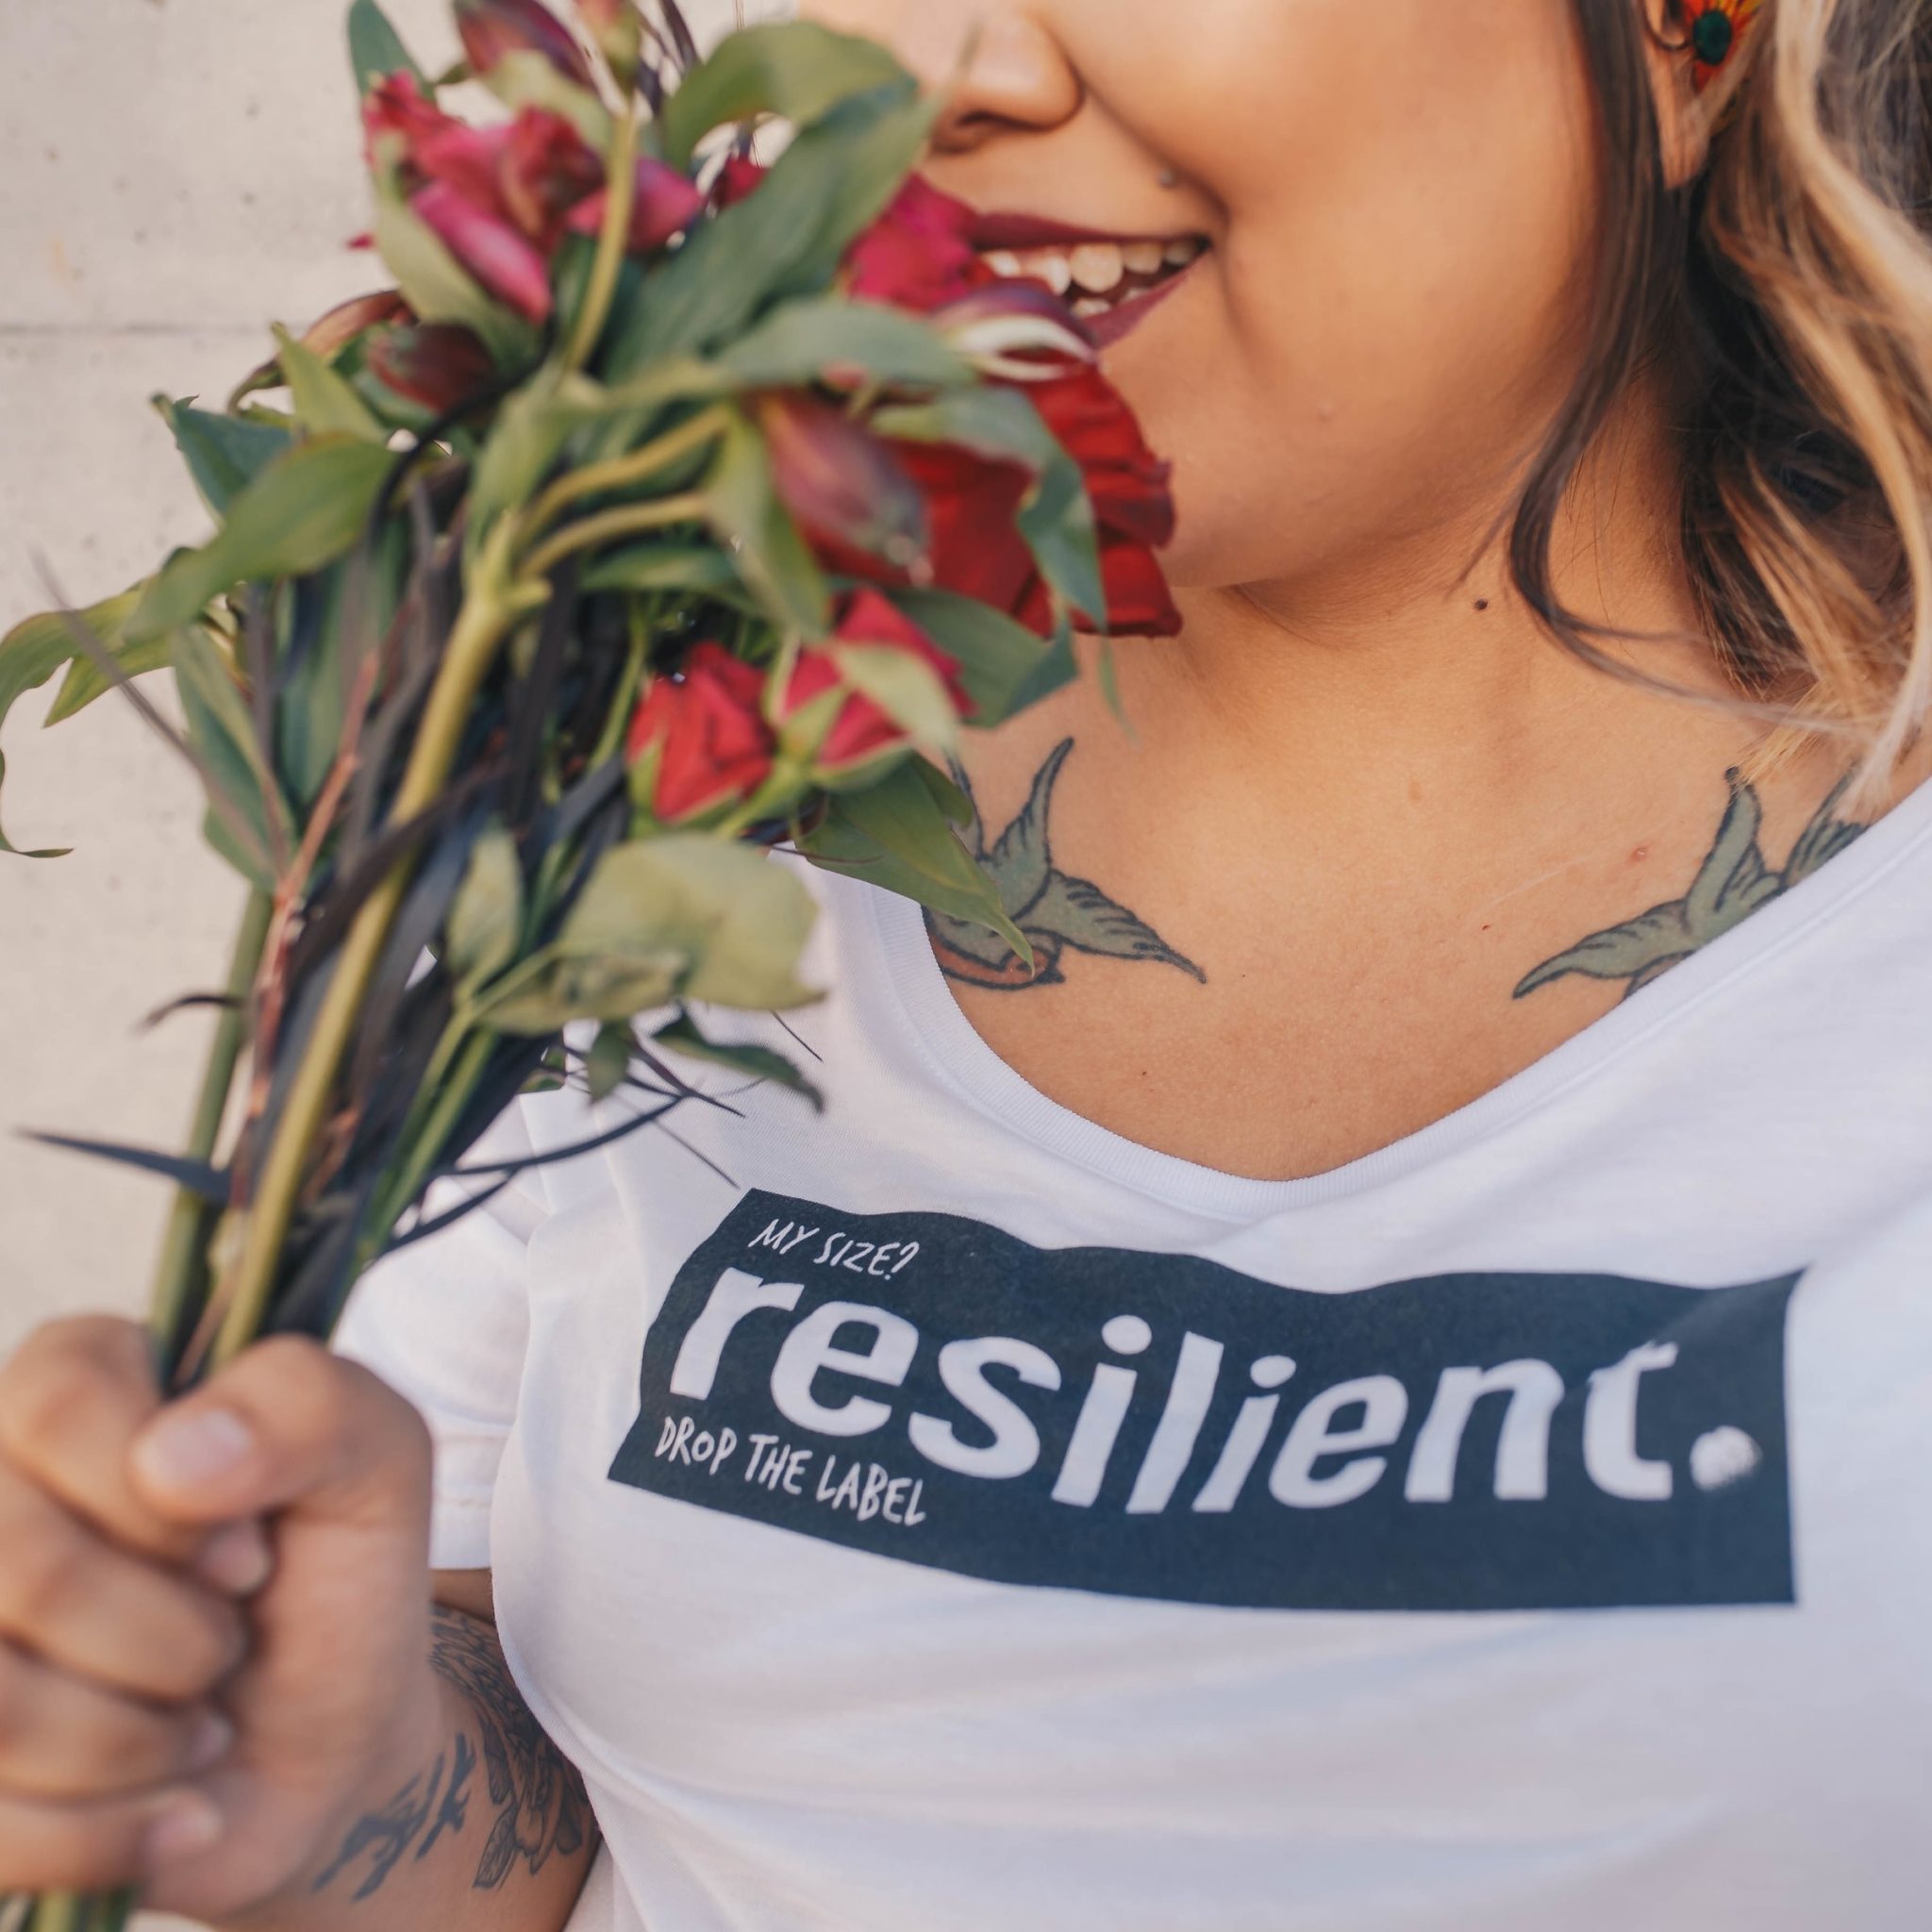 gruba dziewczyna, widoczna na zdjęciu od nosa do piersi, wącha czerwone kwiaty. Na obojczykach ma wytatuowane jaskółki, a na bluzce napis "my size? resilient.".